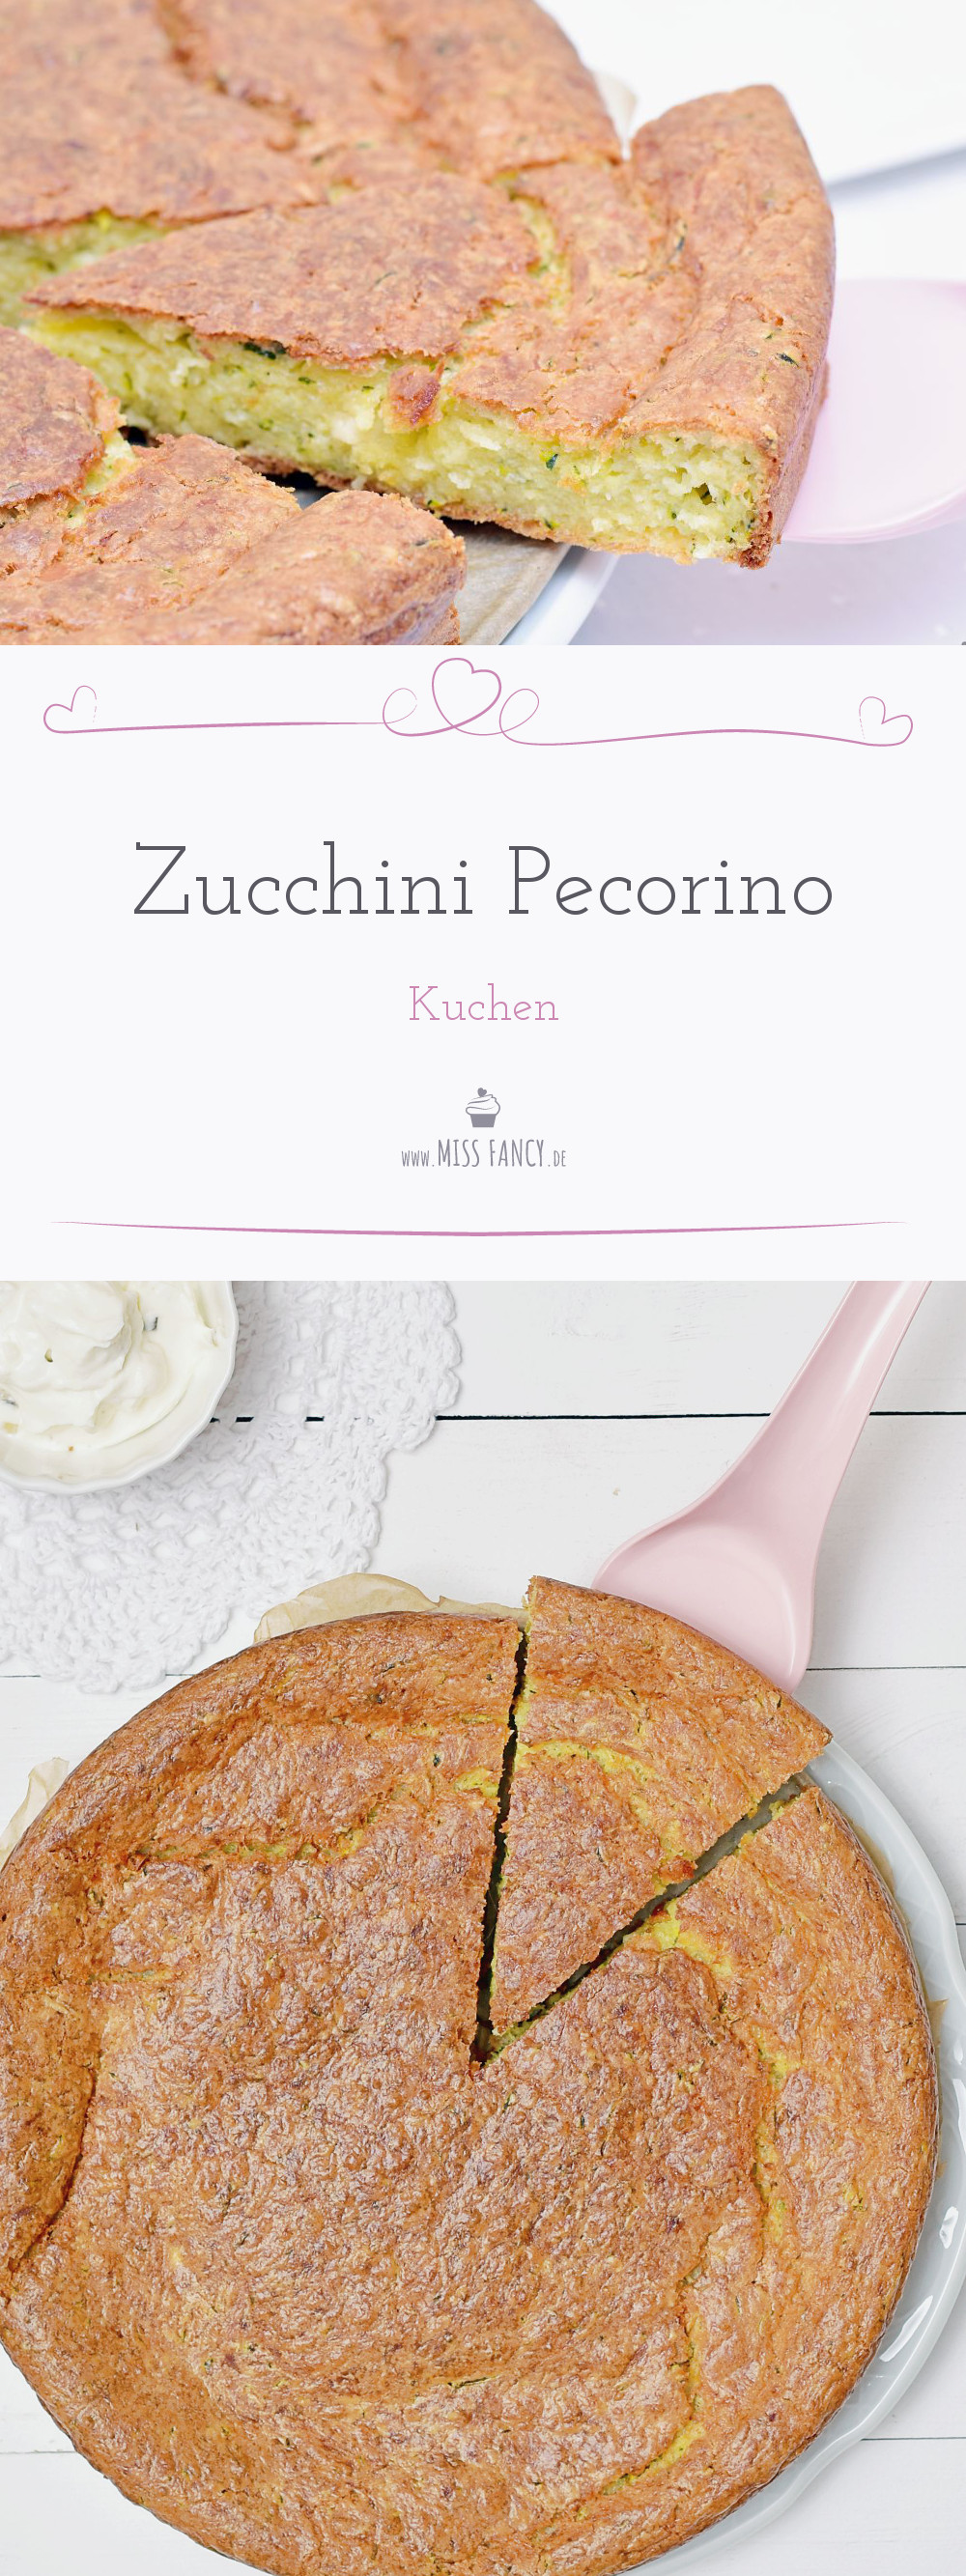 Rezept-Zucchini-Pecorino-Kuchen